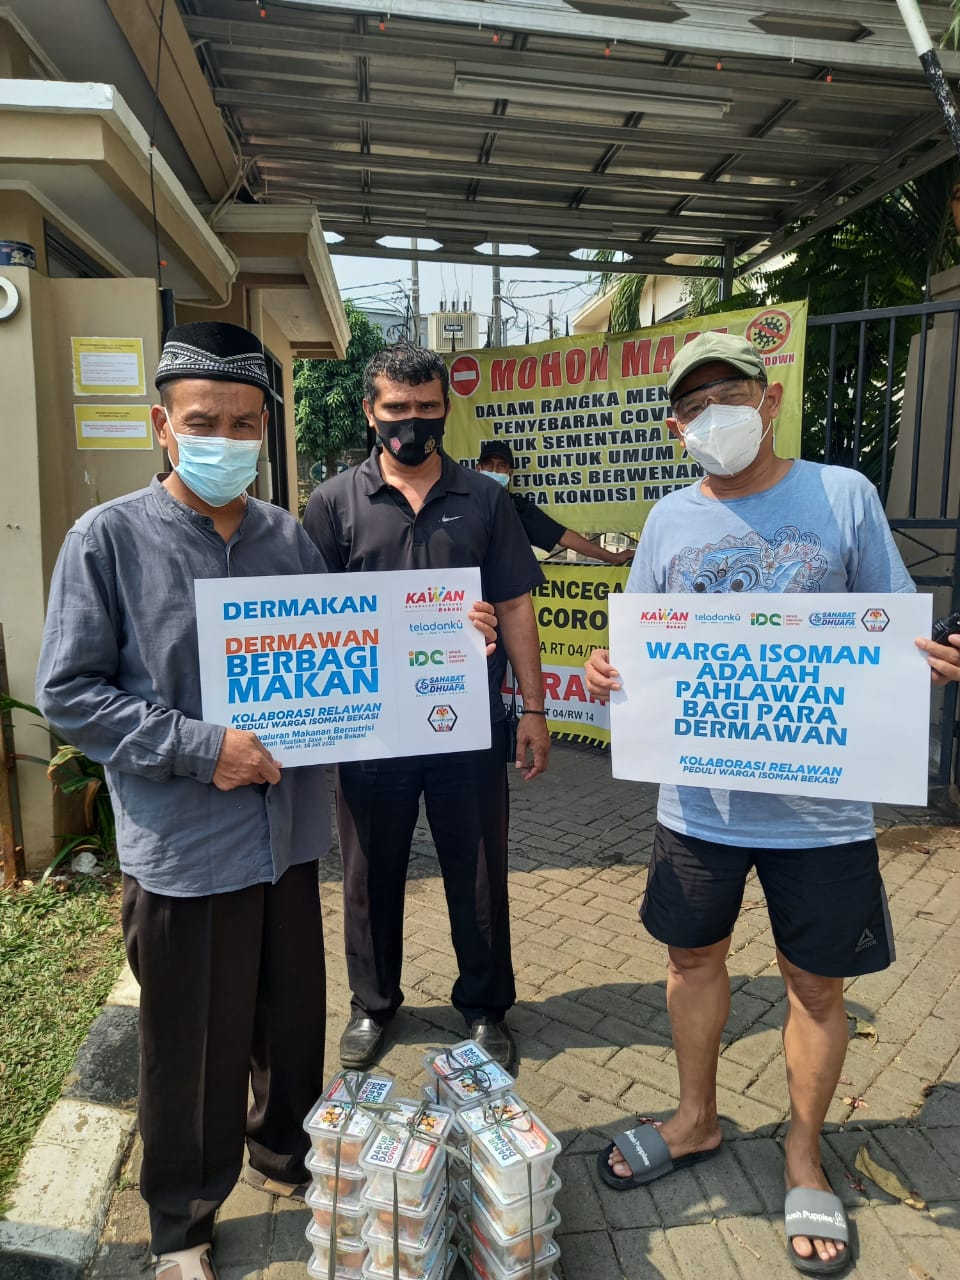 IDC Cs Salurkan Ratusan Nasi Kotak untuk Warga Isoman di Bekasi